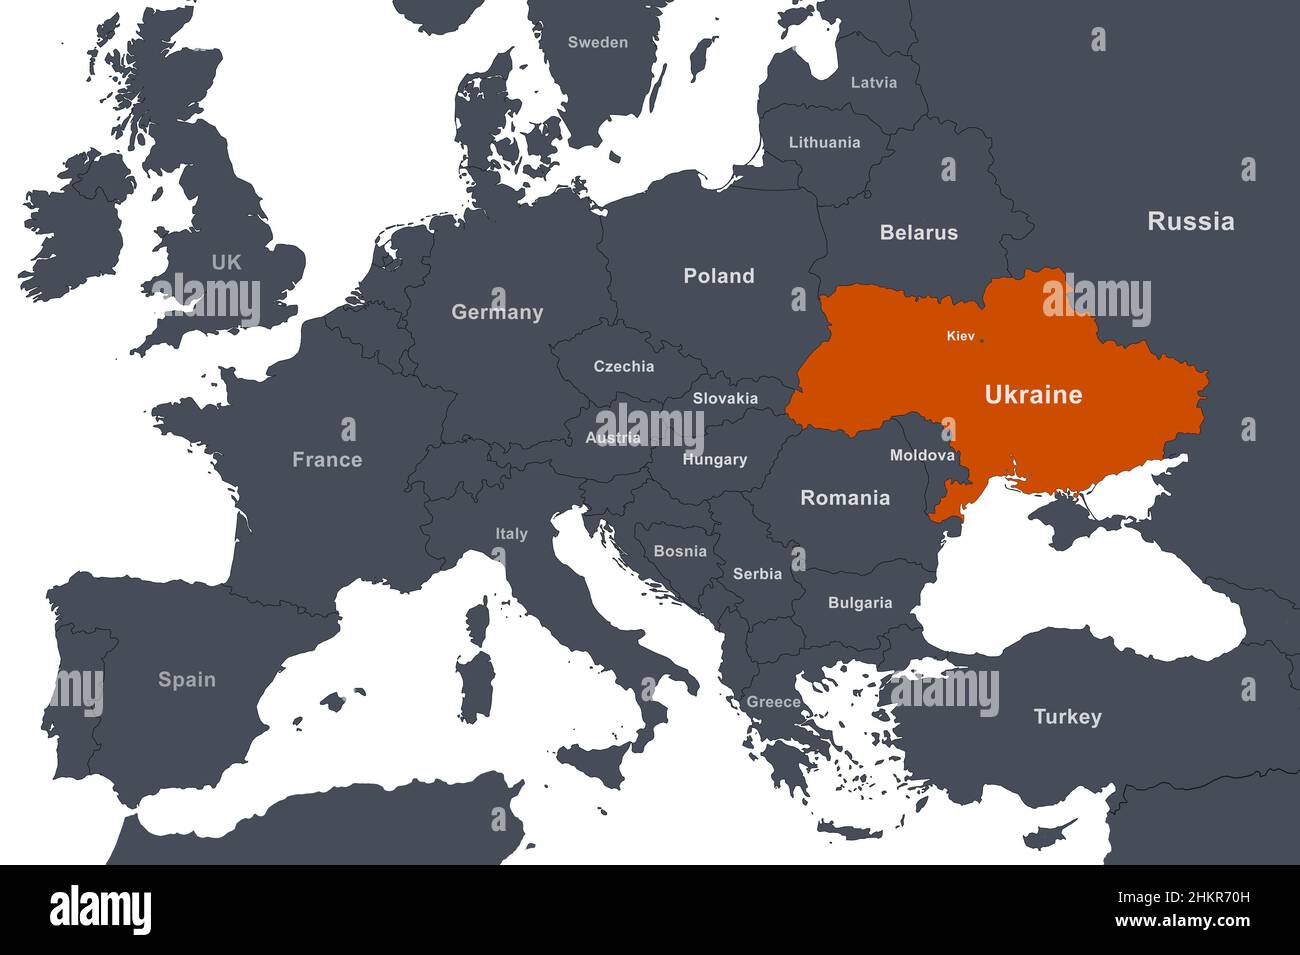 Ucrania en Europa Mapa general con fronteras. Mapa político con la región del Mar Negro y territorio de Rusia, Crimea, Belarús, Polonia y otros países. Foto de stock